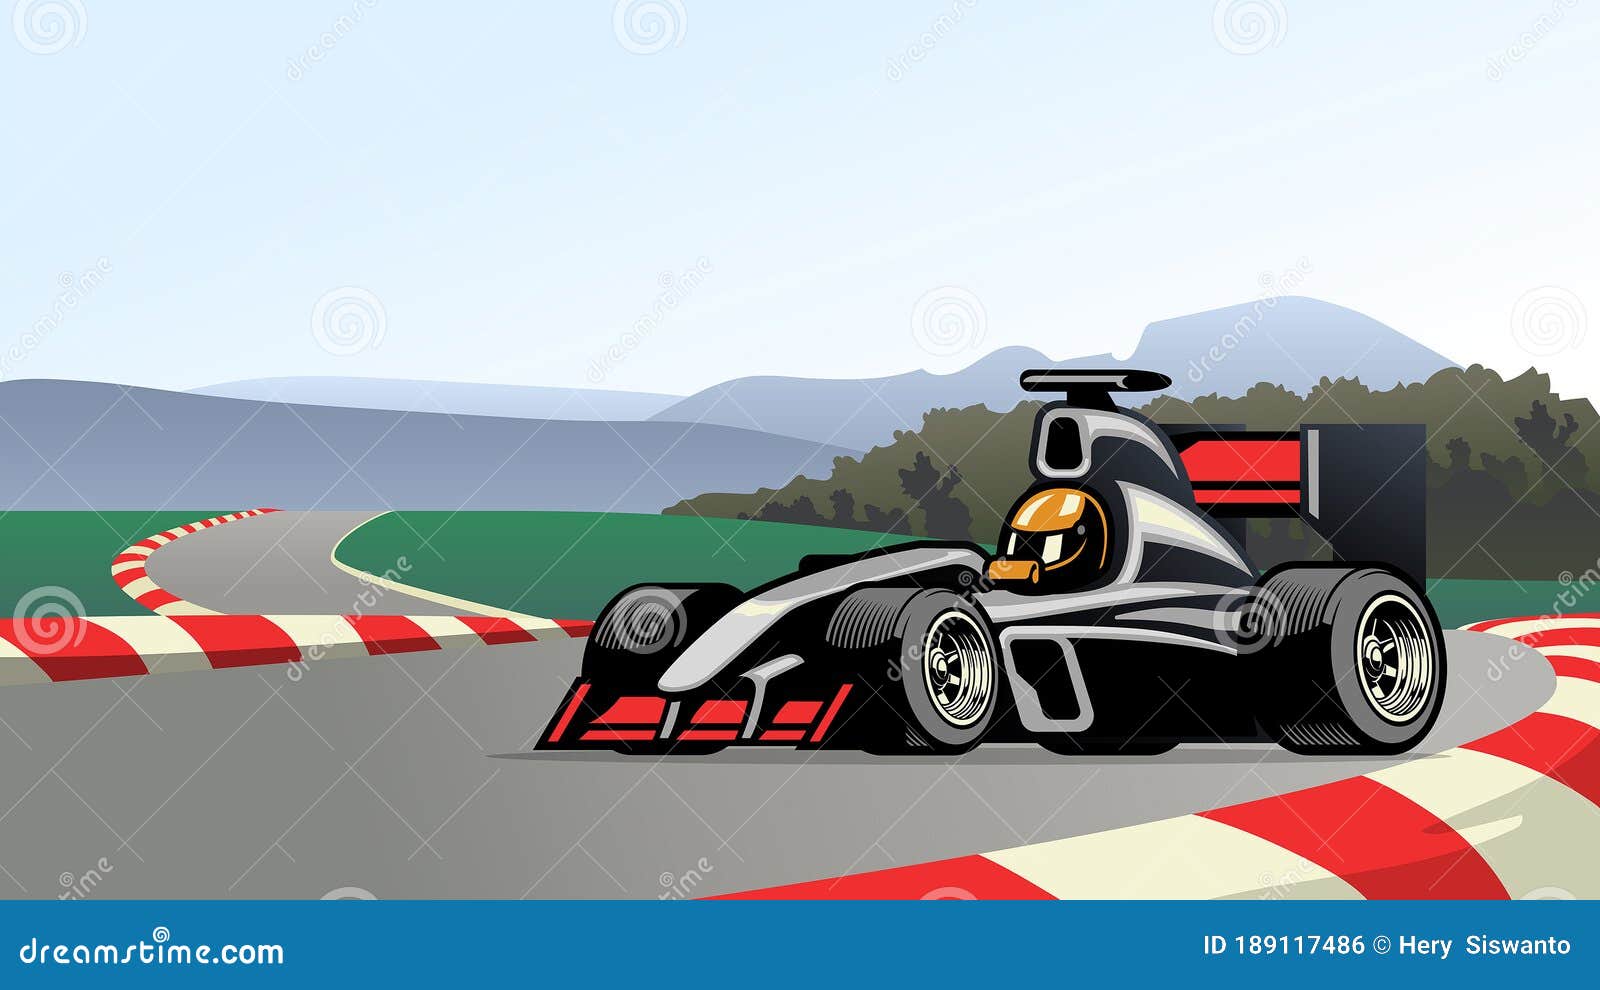 carros de corrida na pista, elementos de corrida de carros, ilustração de  desenho vetorial 19494135 Vetor no Vecteezy